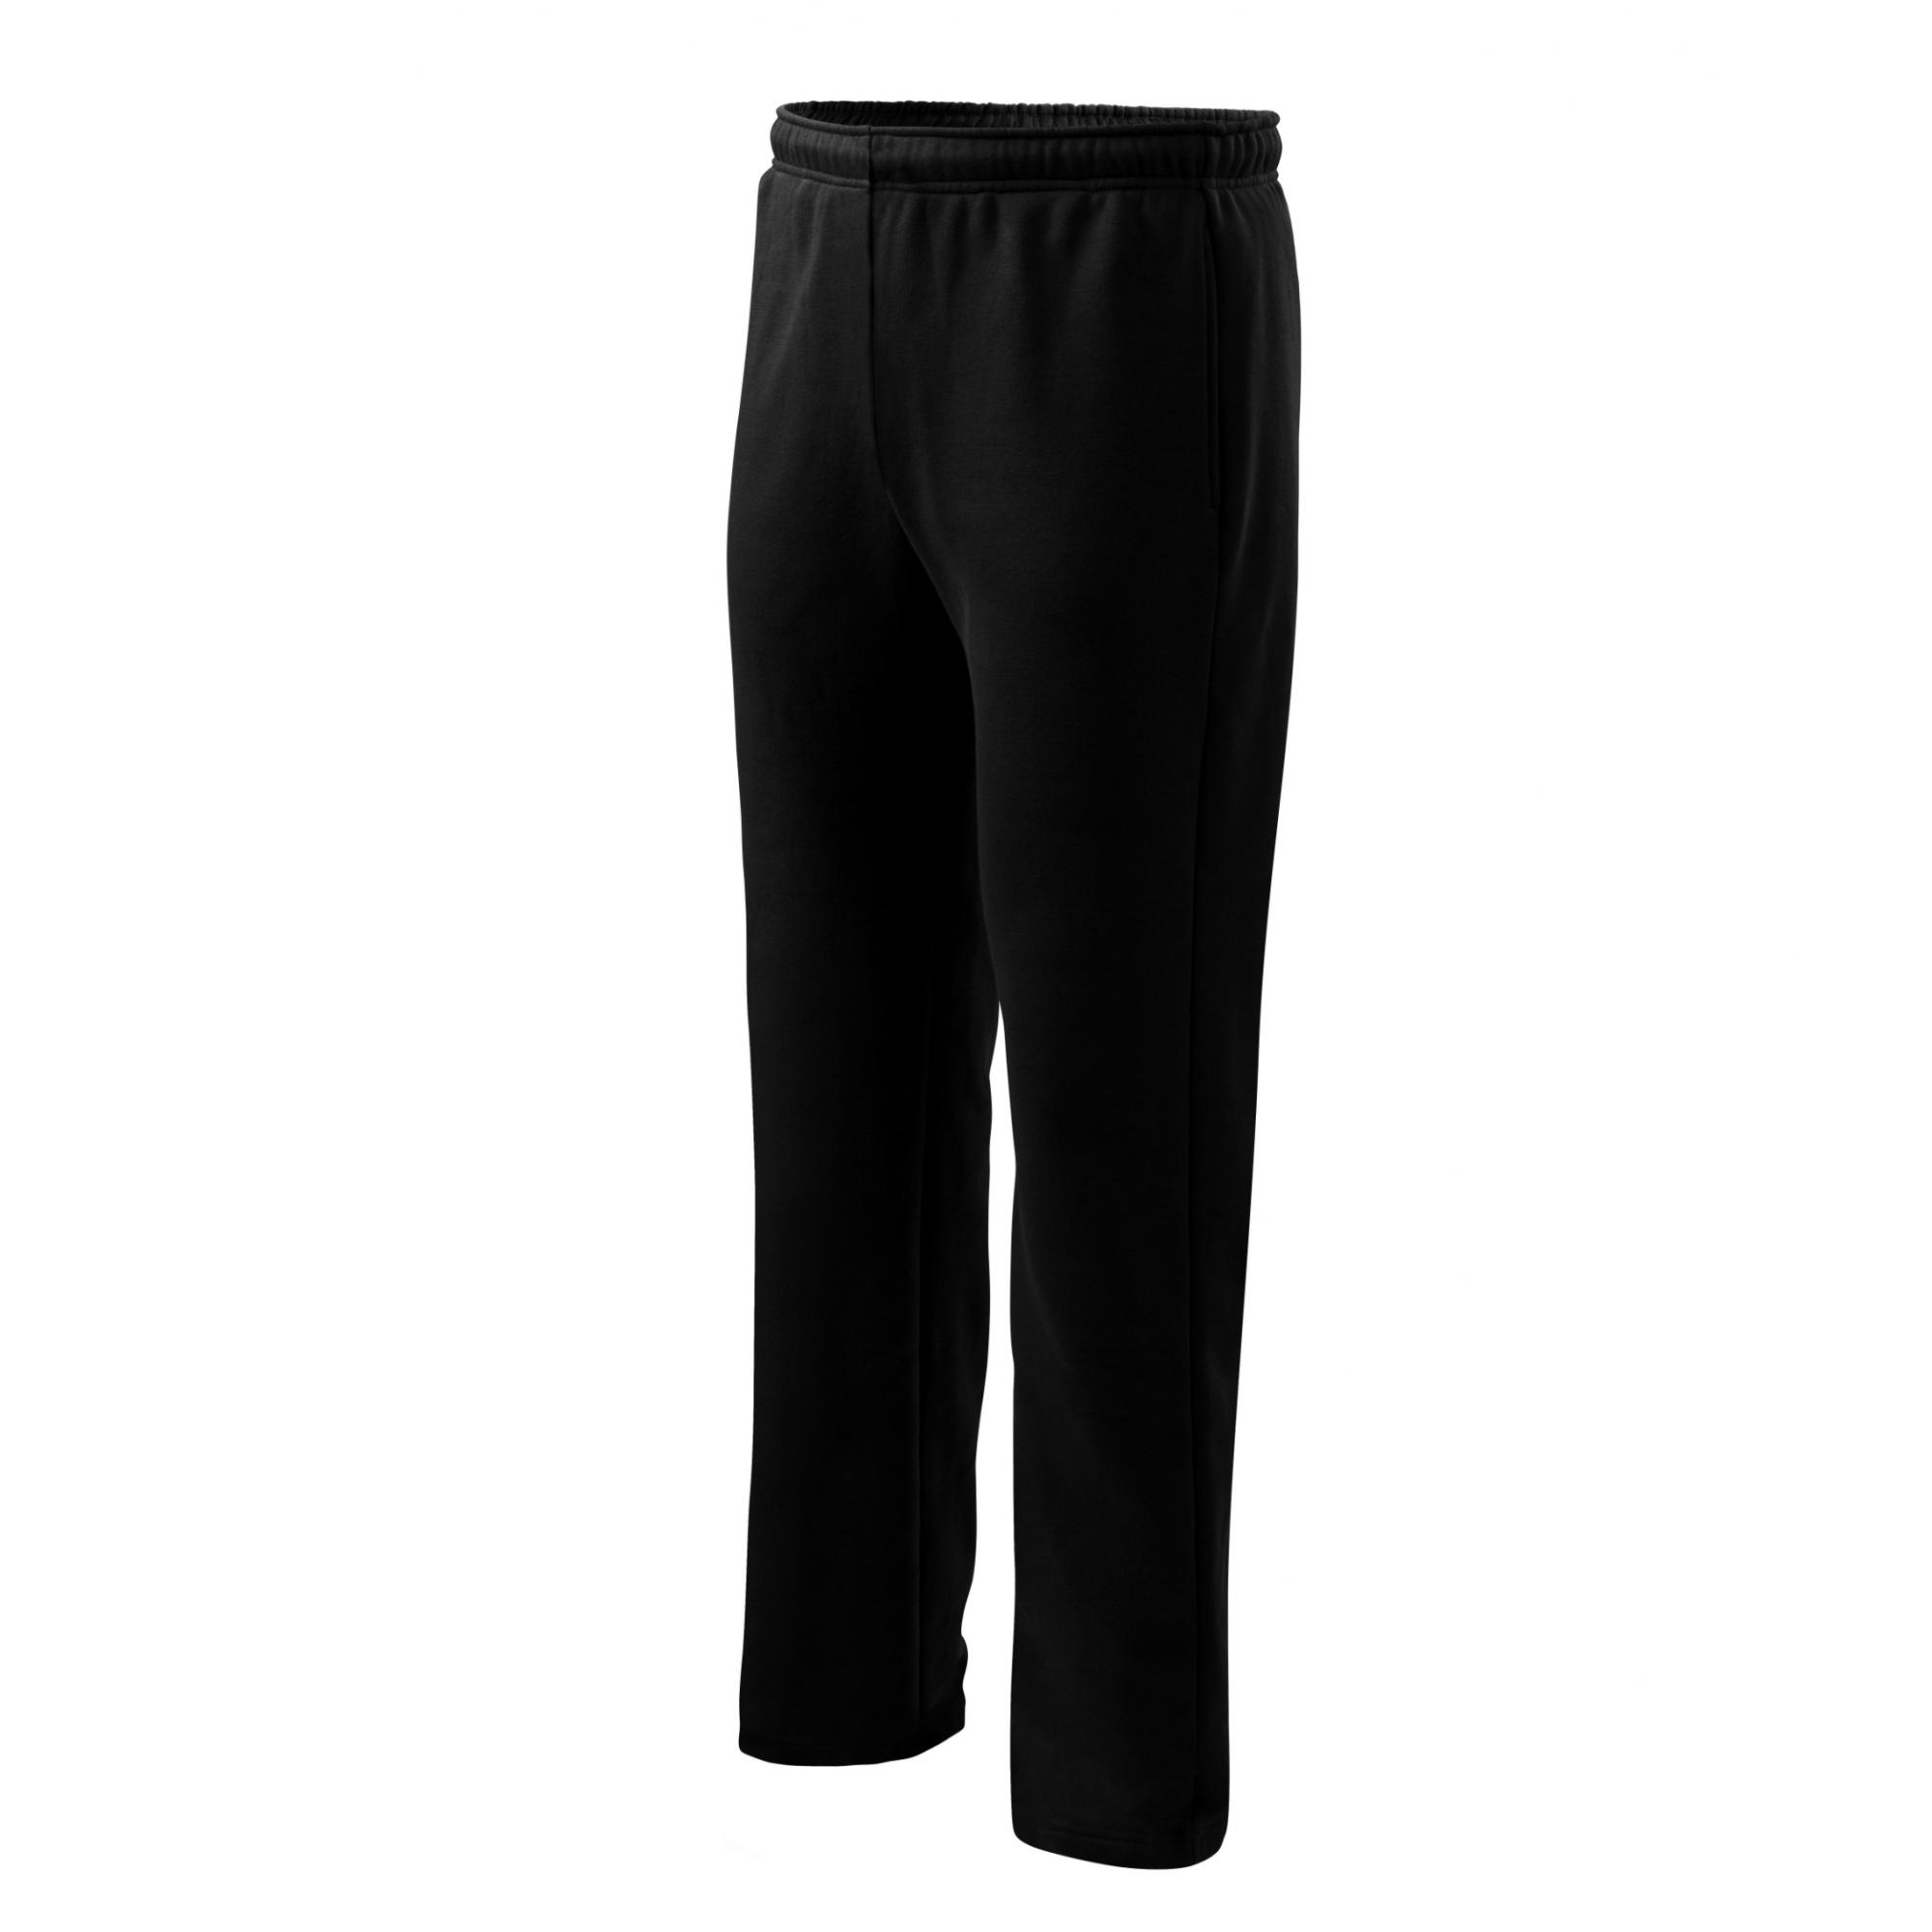 Pantaloni pentru bărbaţi/copii Comfort 607 Negru 10ani